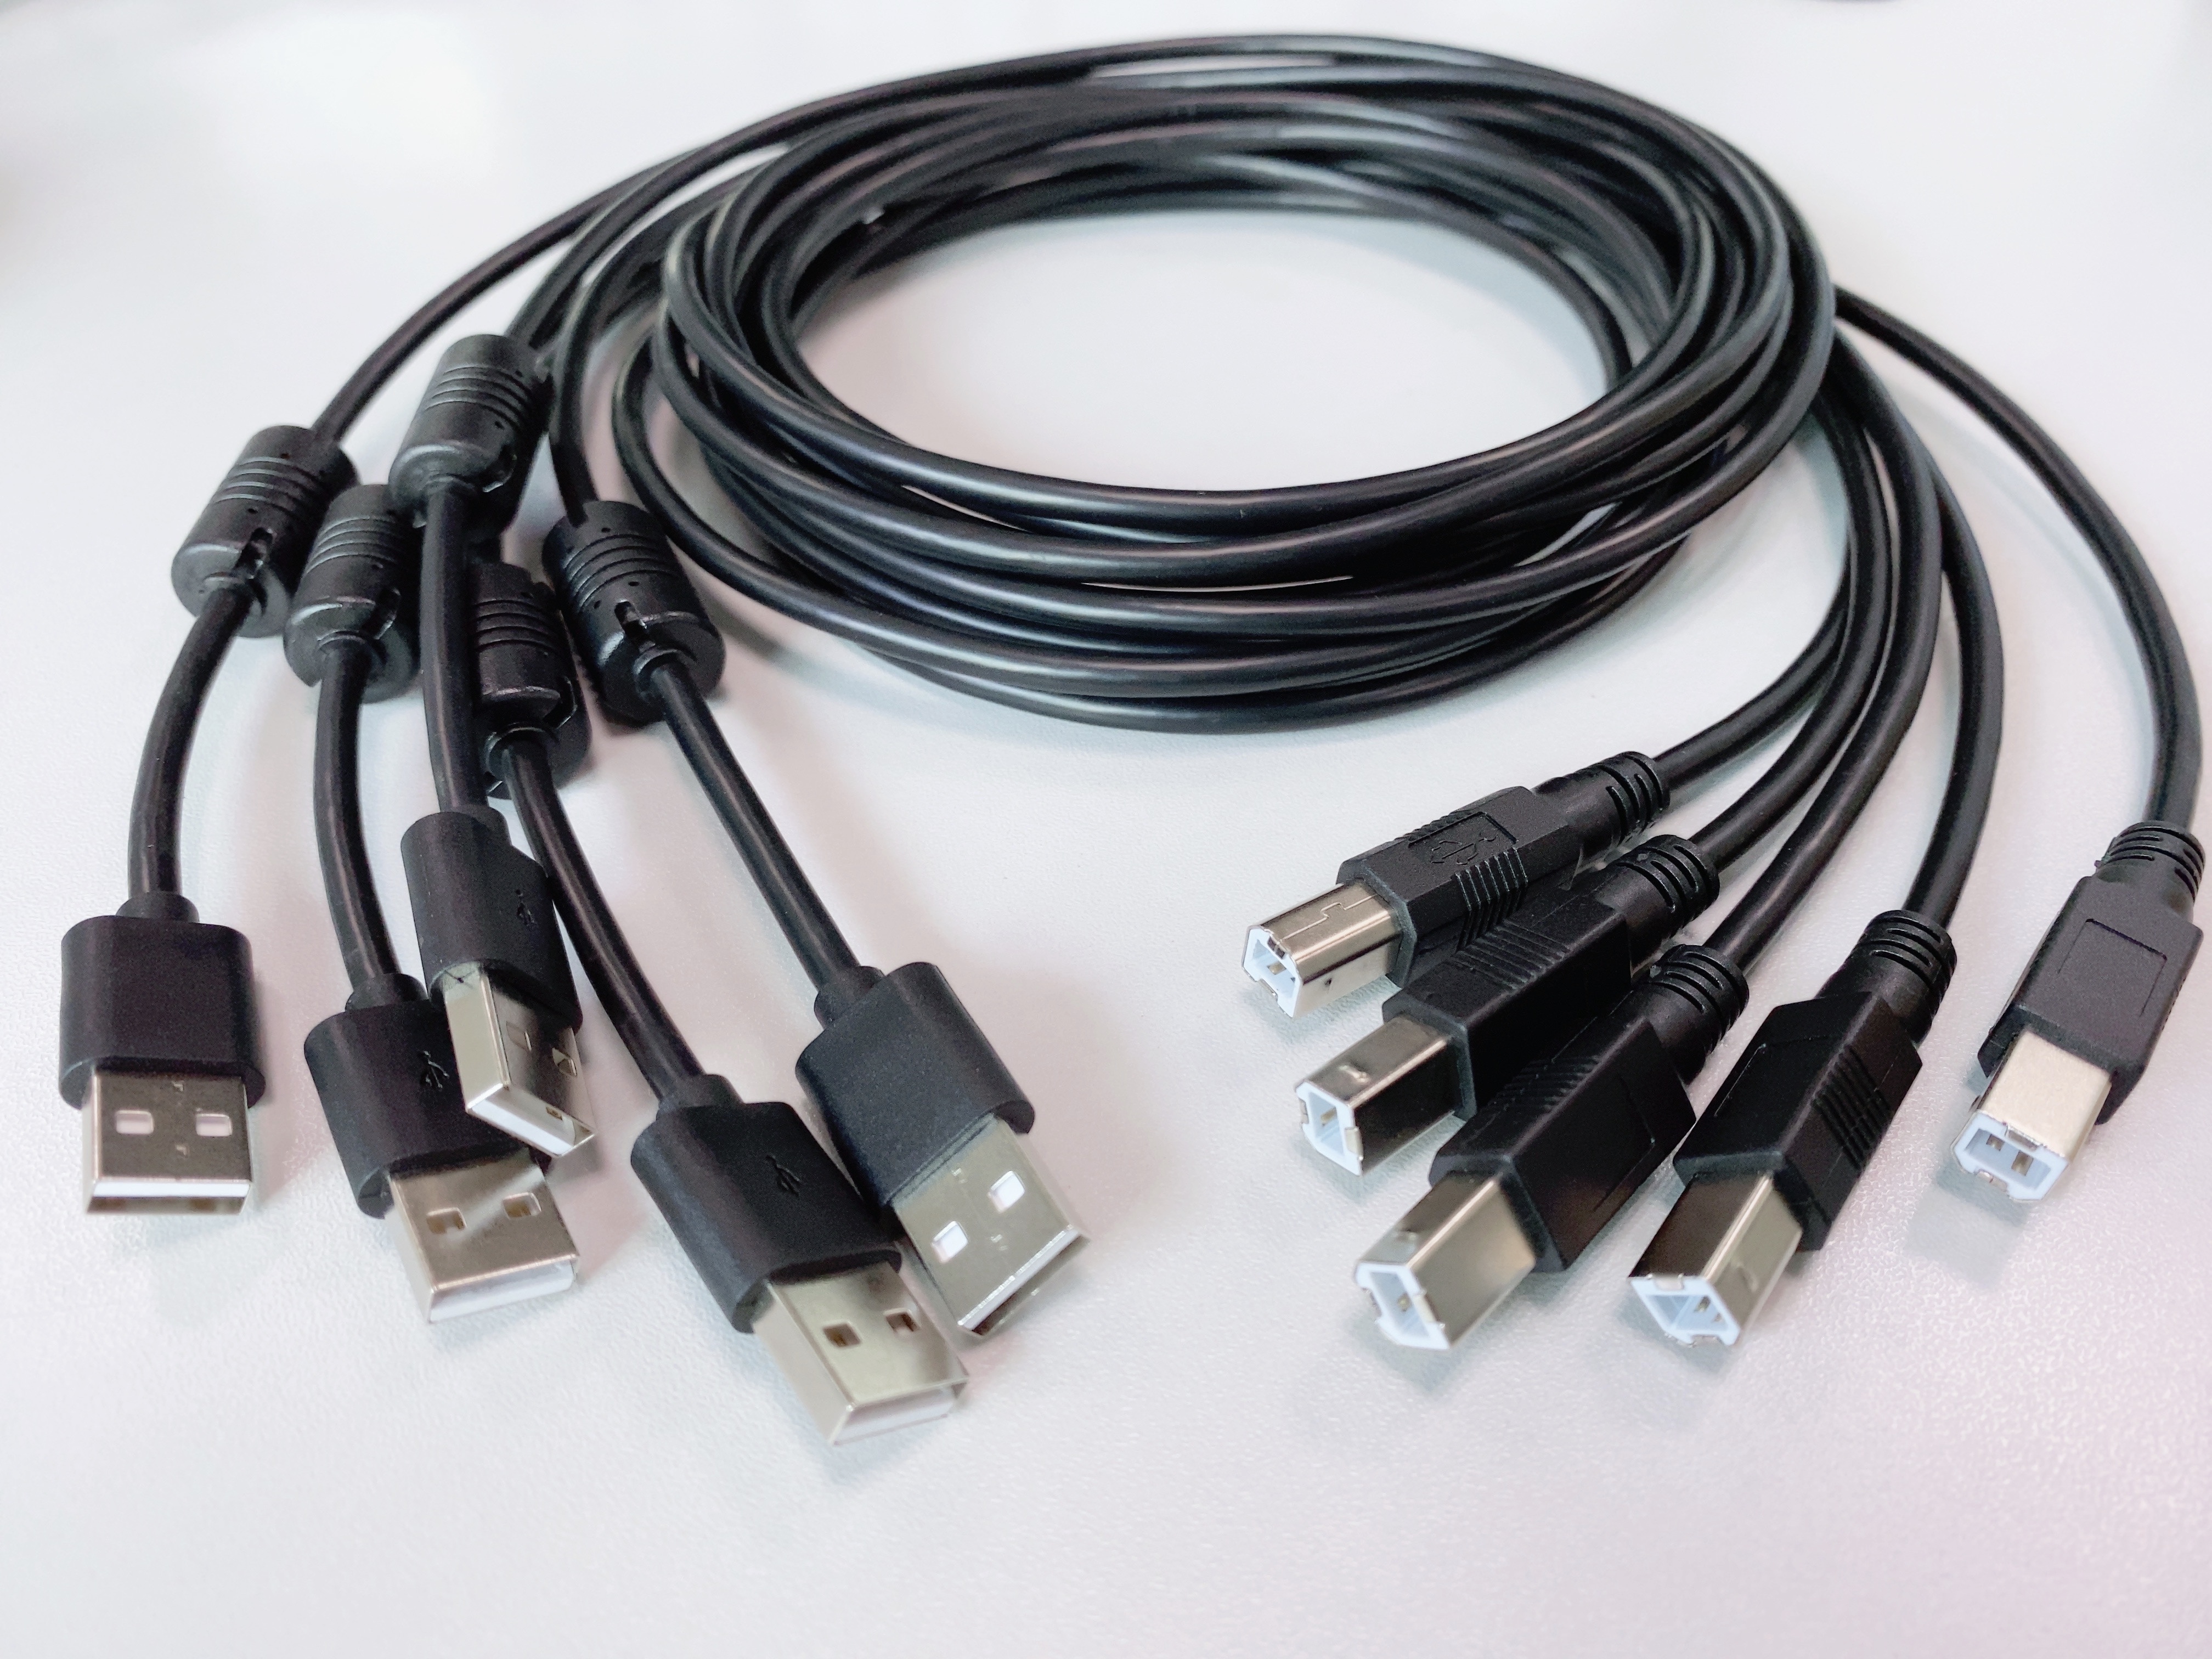 Пользовательский USB-кабель от A до B, штекер для принтера, сканера